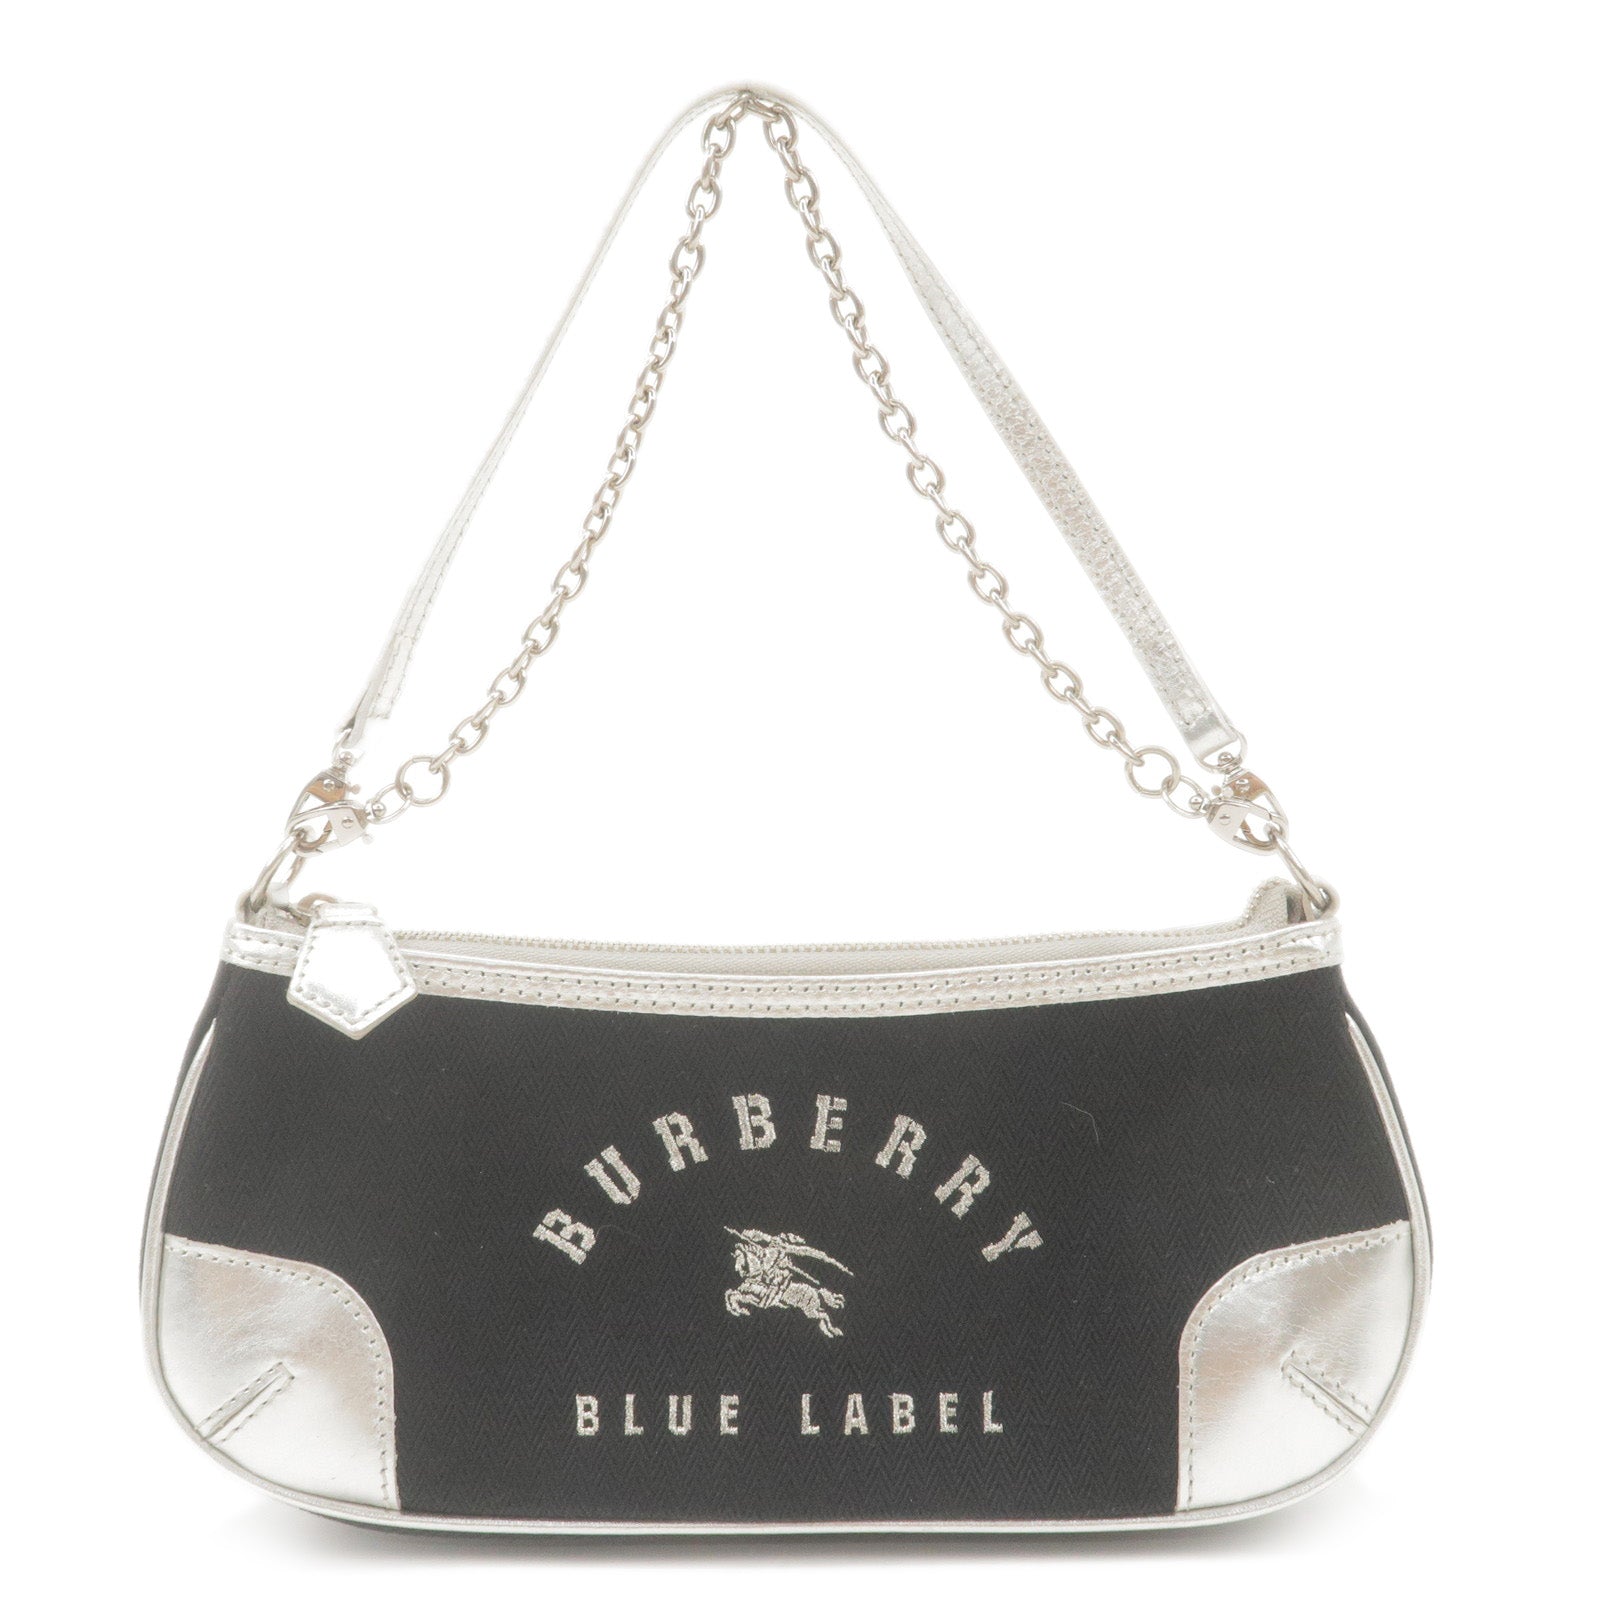 BURBERRY Blue Label Canvas Leather Shoulder Bag